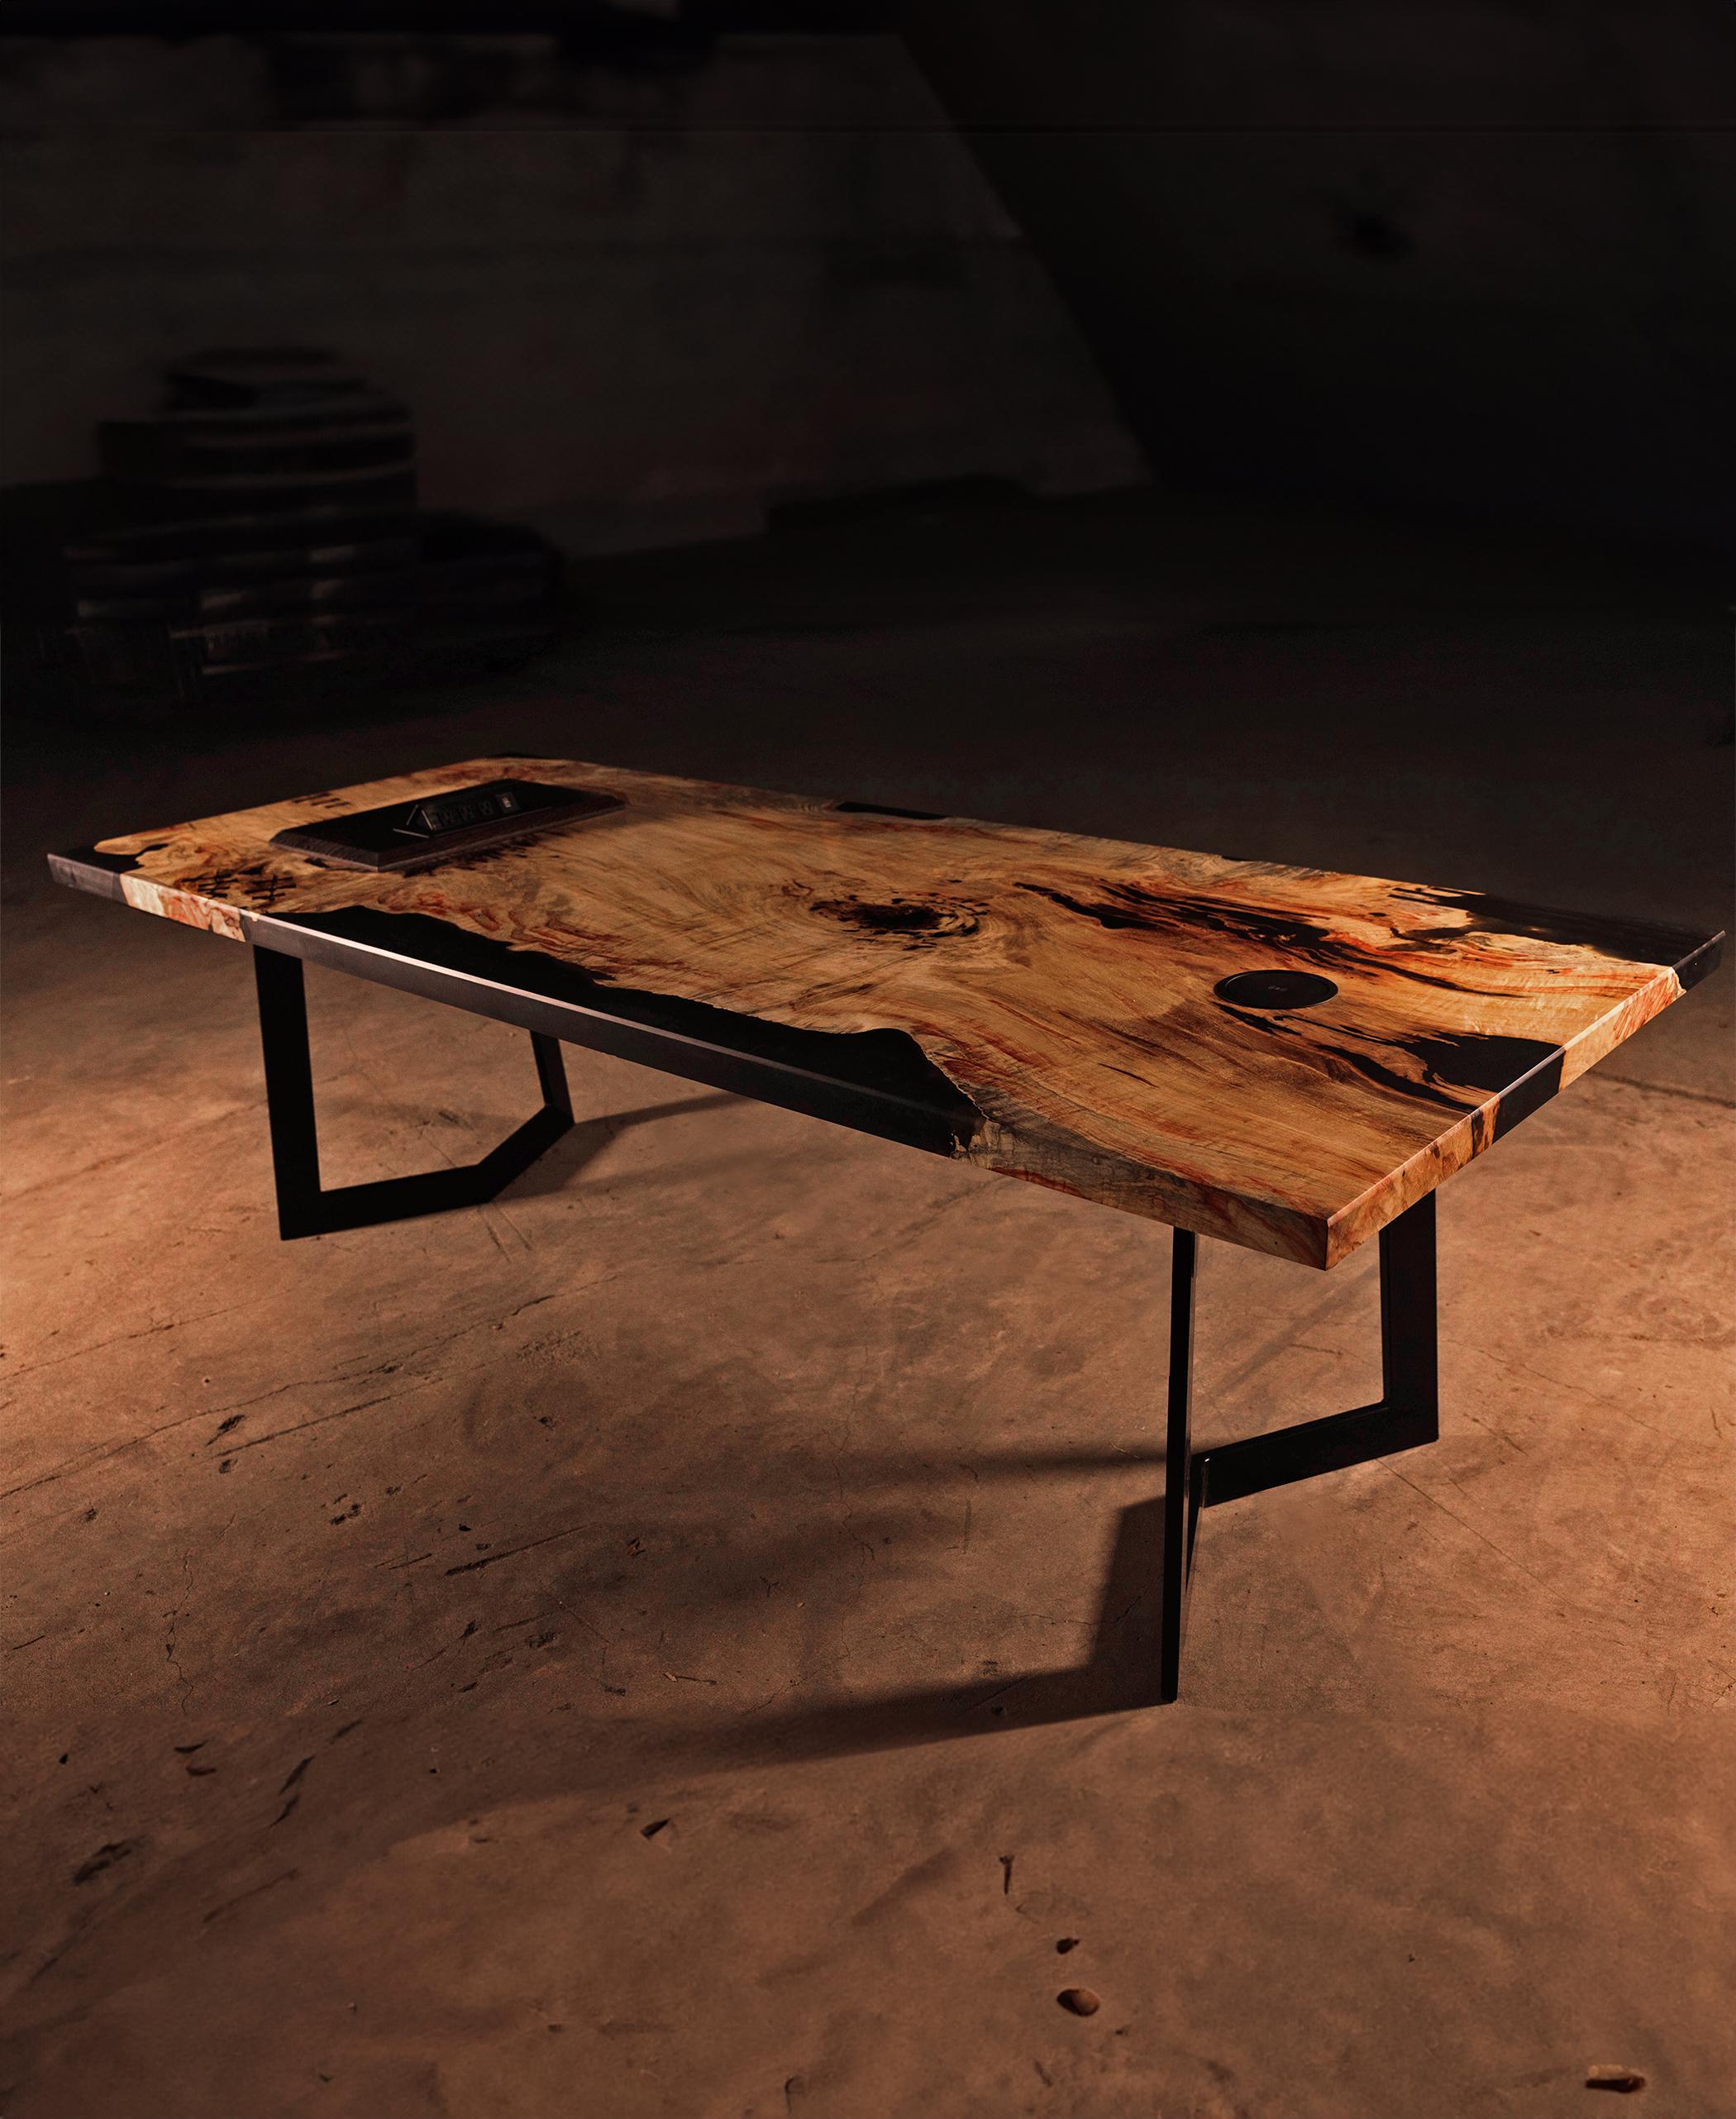 Fabriquée avec des accents de wengé, cette table présente des nœuds papillon, des bandes et des inserts complexes, chacun étant méticuleusement placé pour accentuer la beauté naturelle du bois. Une base personnalisée et une électronique haut de